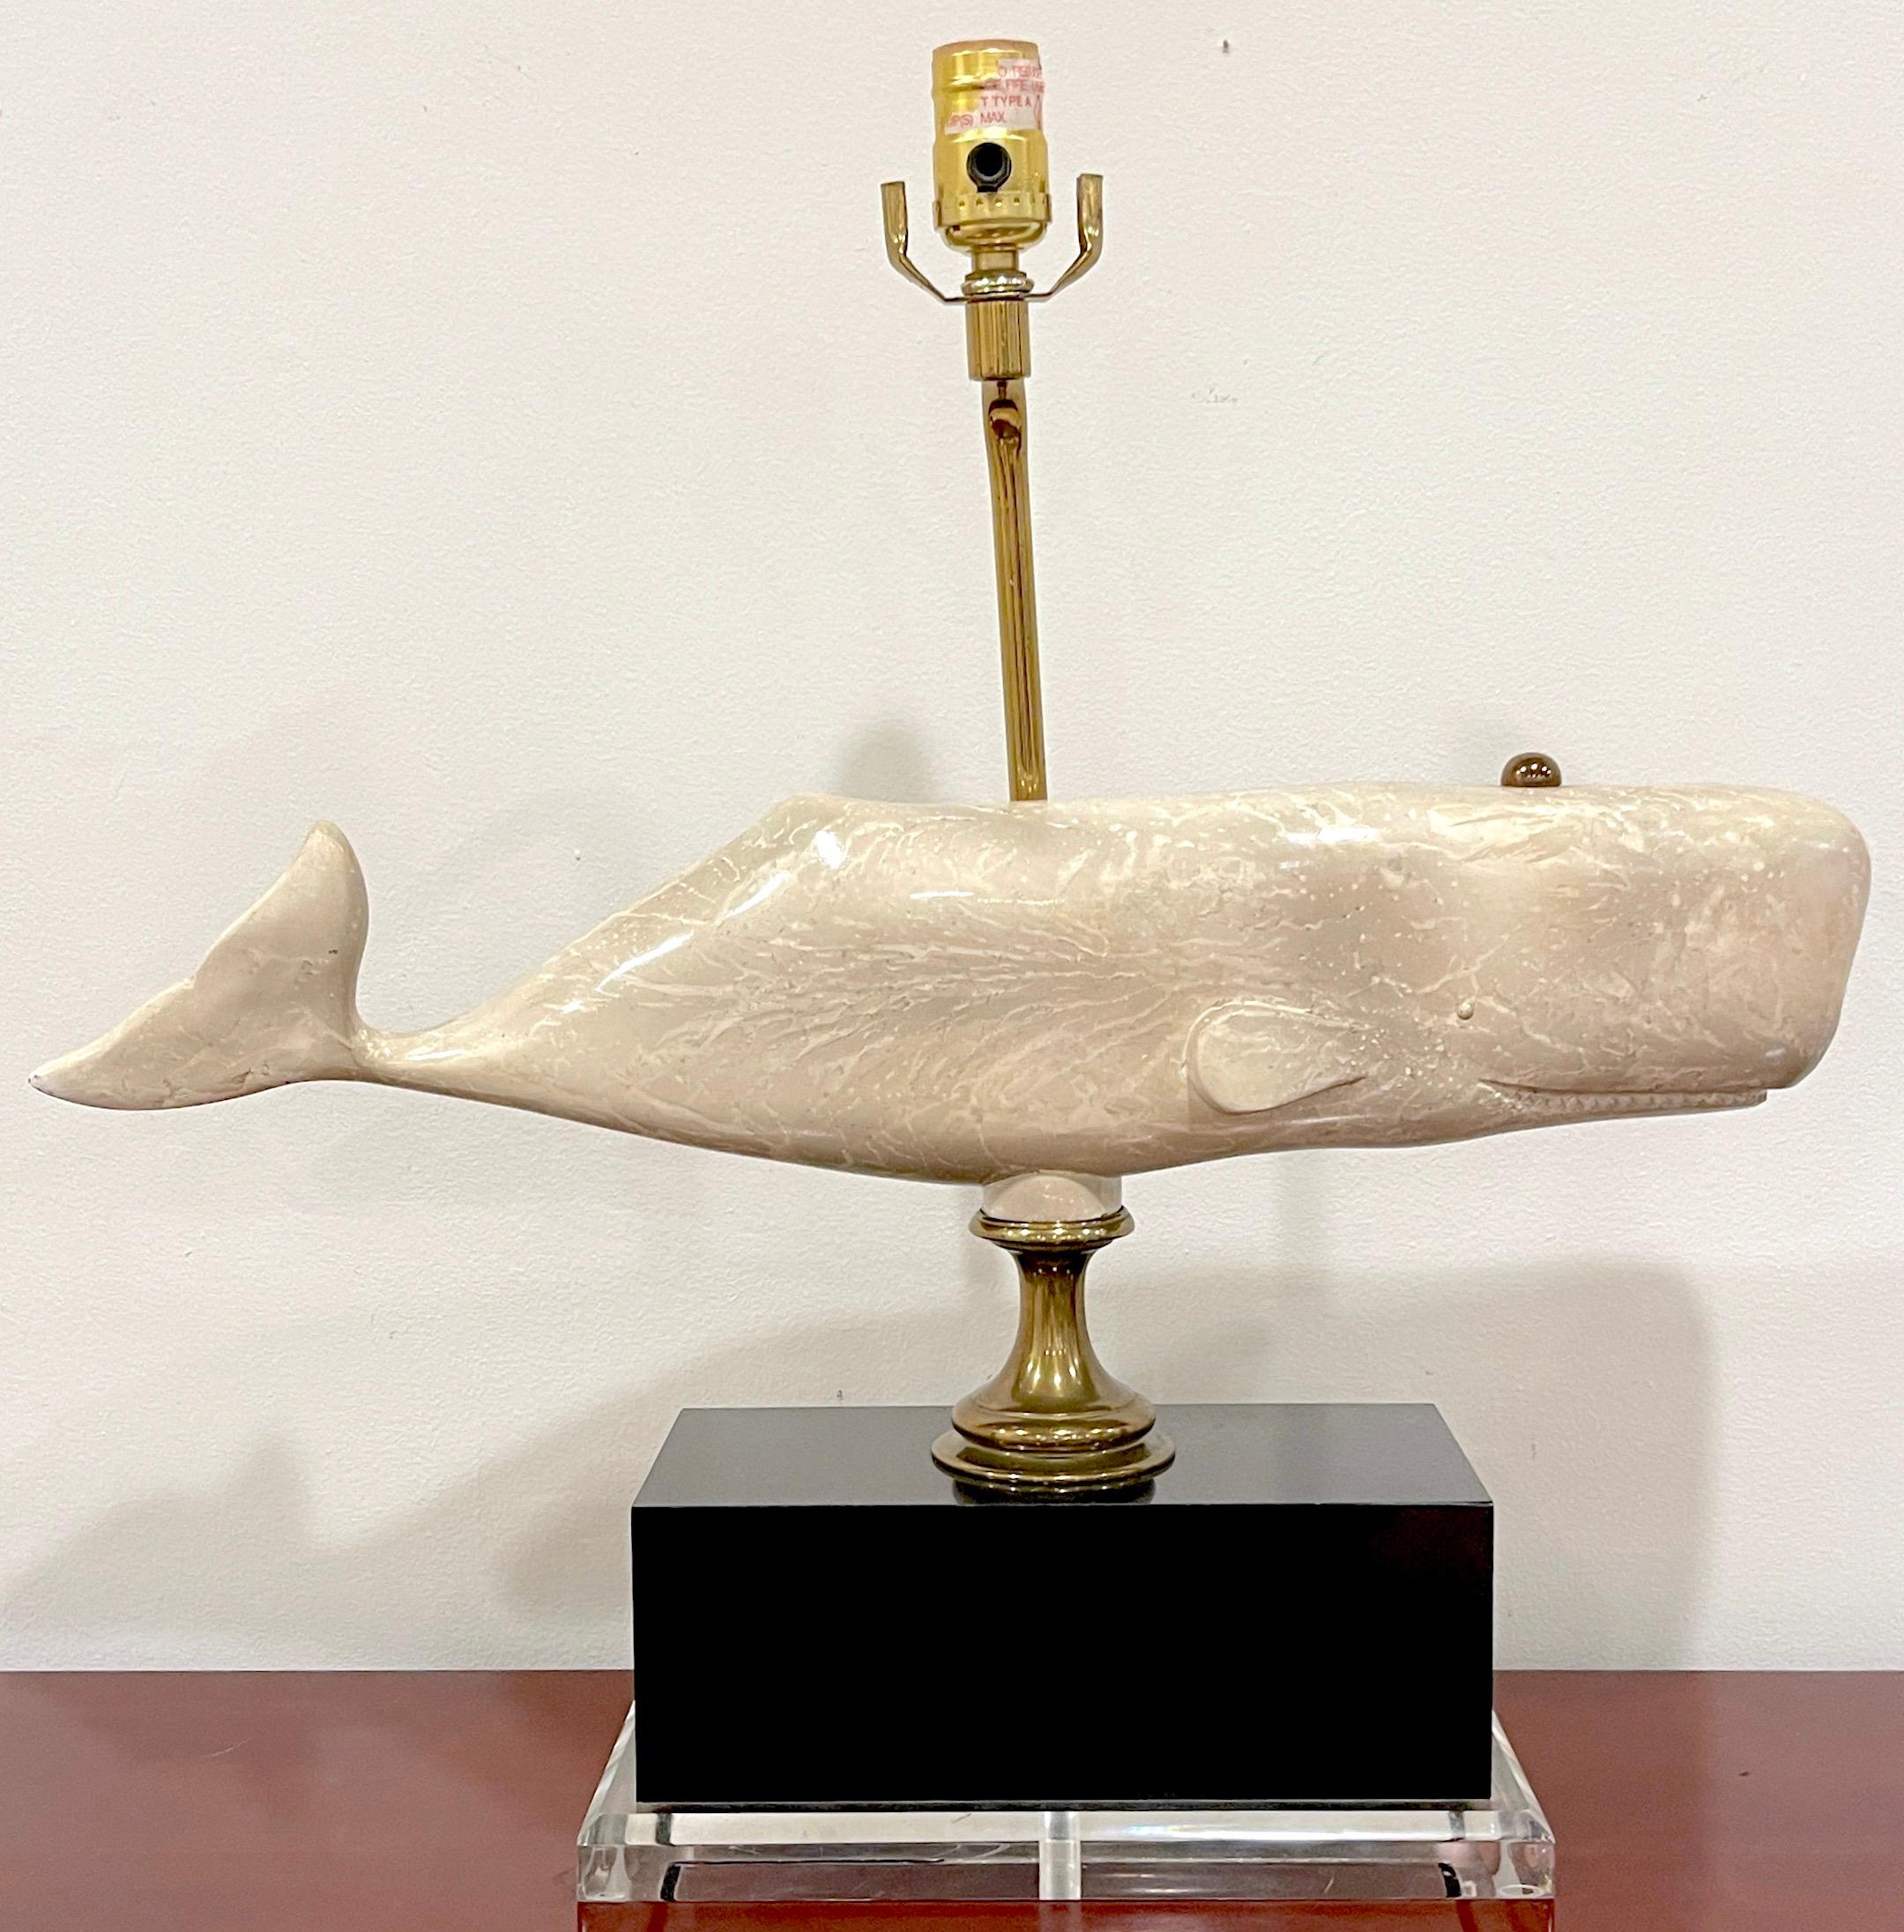 Figurale Wal-Lampe aus der Mitte des Jahrhunderts, Bauer Lamp Co, 1991
Eine fesselnde Mischung aus Kunst und Funktionalität. Die realistische und große 23 Zoll breite Wal-Skulptur ist realistisch gegossen und fachmännisch dekoriert.  mit